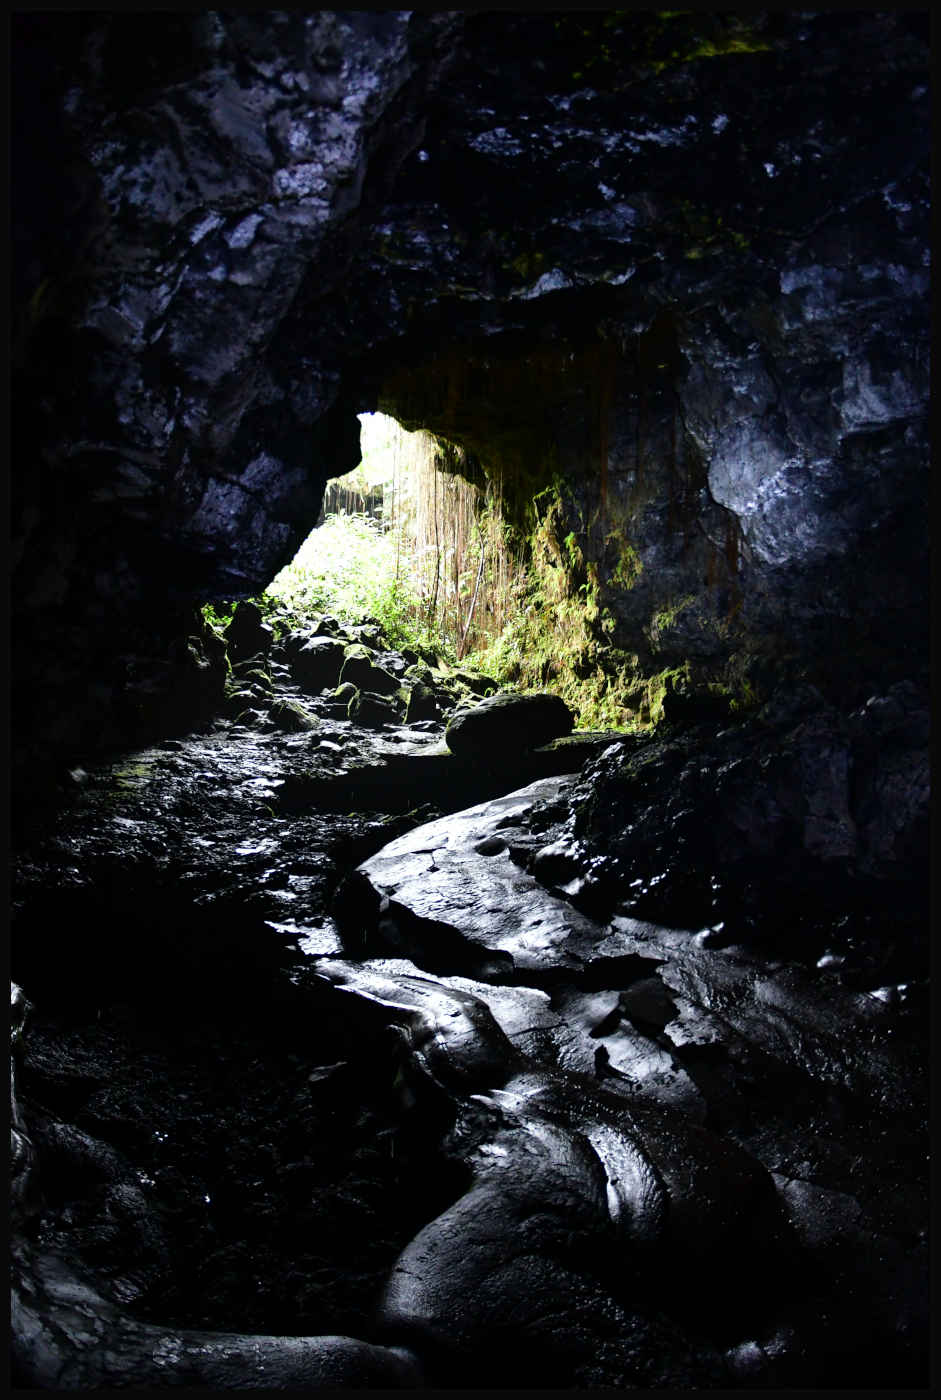 Mauka - Kaumana Caves